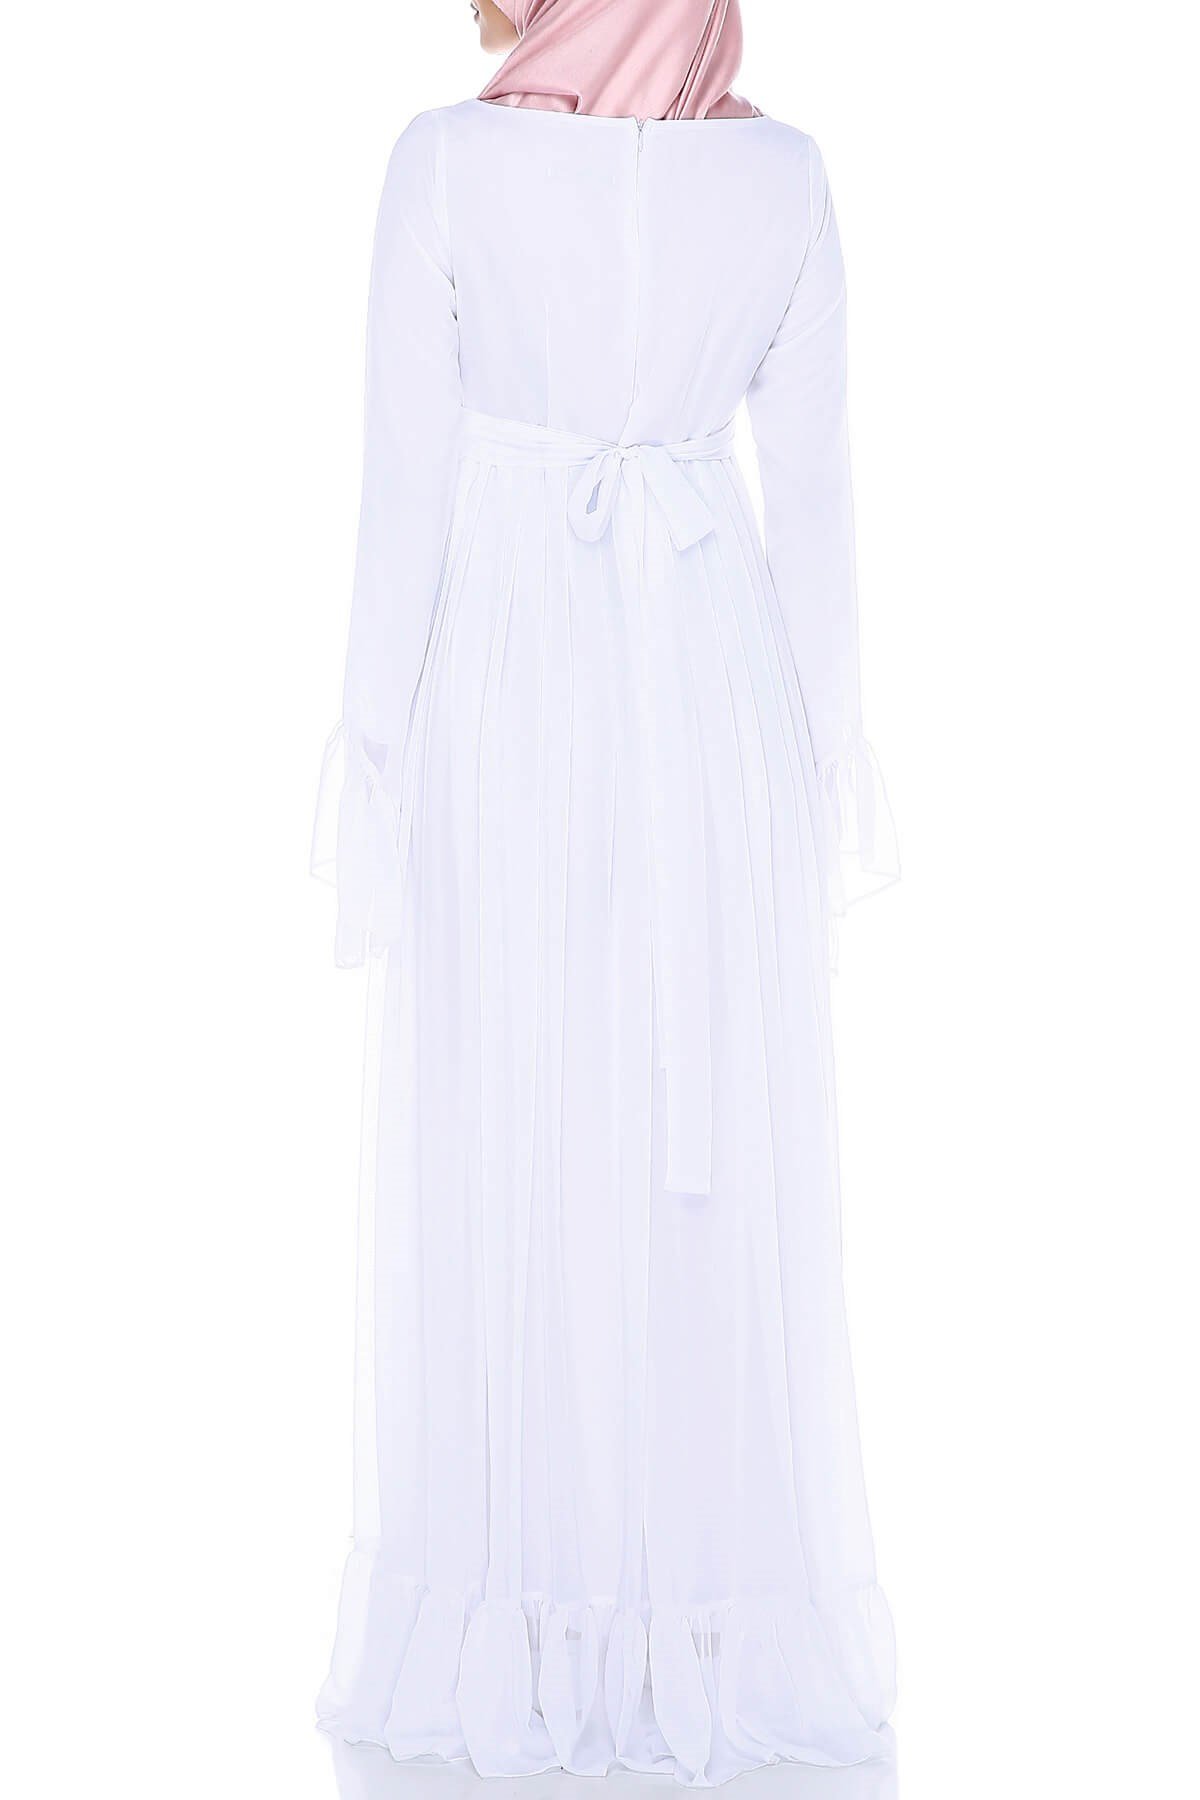 Moda Labio | Minel Şifon Tesettür Beyaz Hamile Elbise